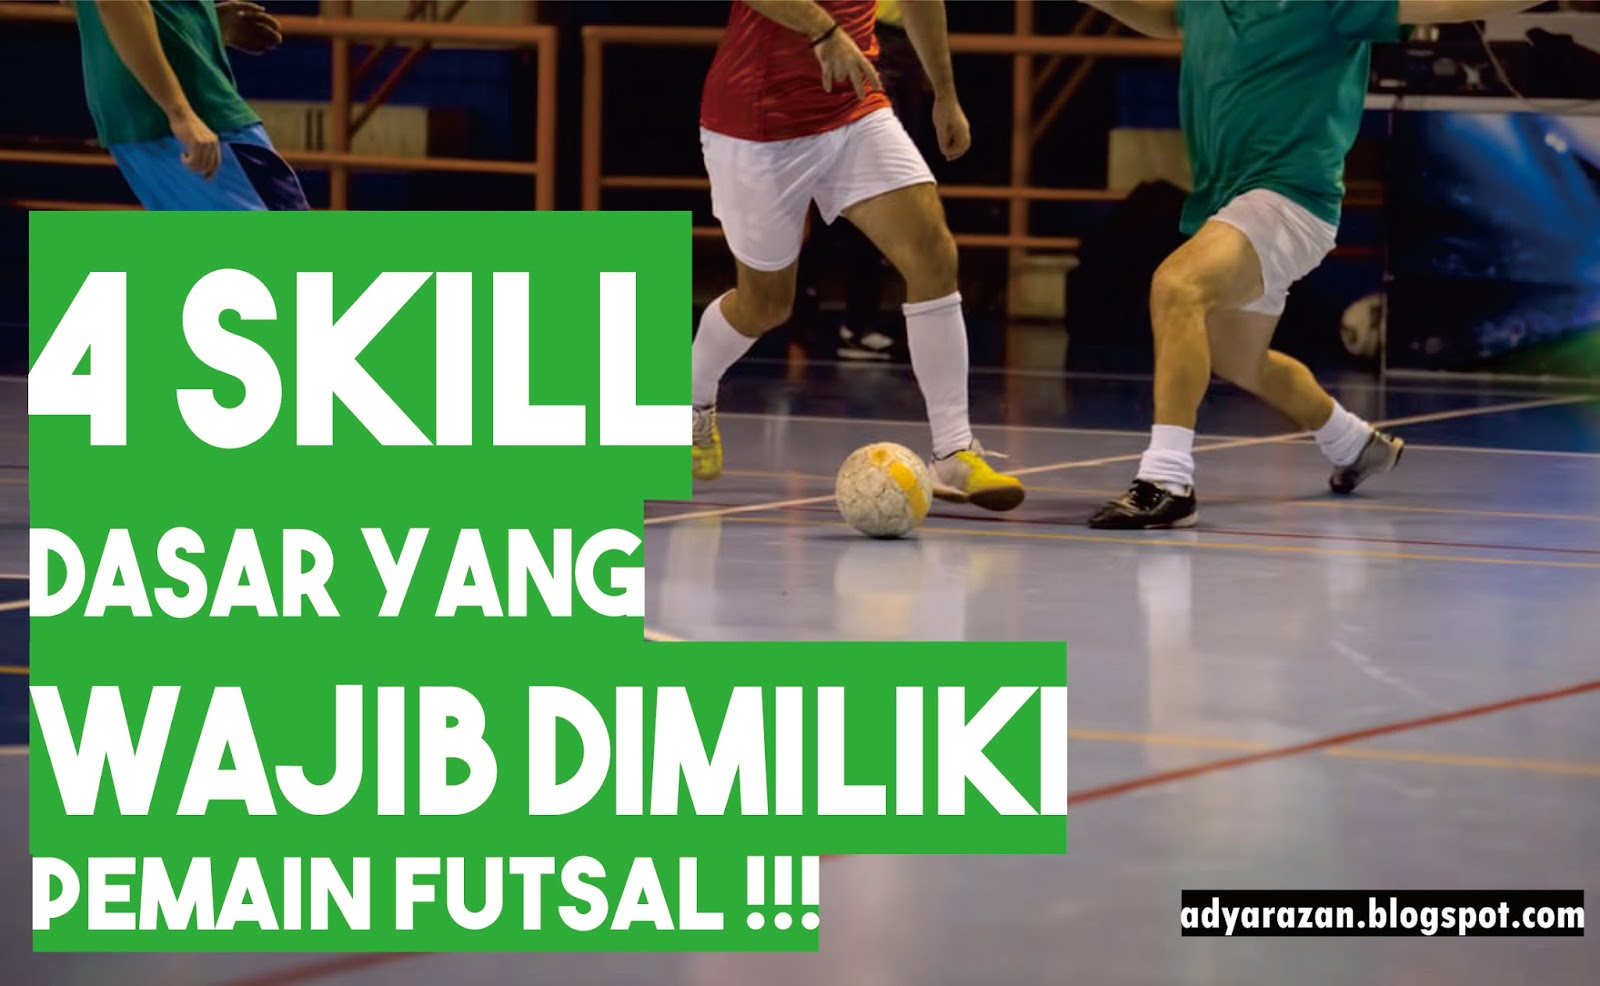  34 Kumpulan  Kata Kata  Motivasi  Futsal  Katamottivasi